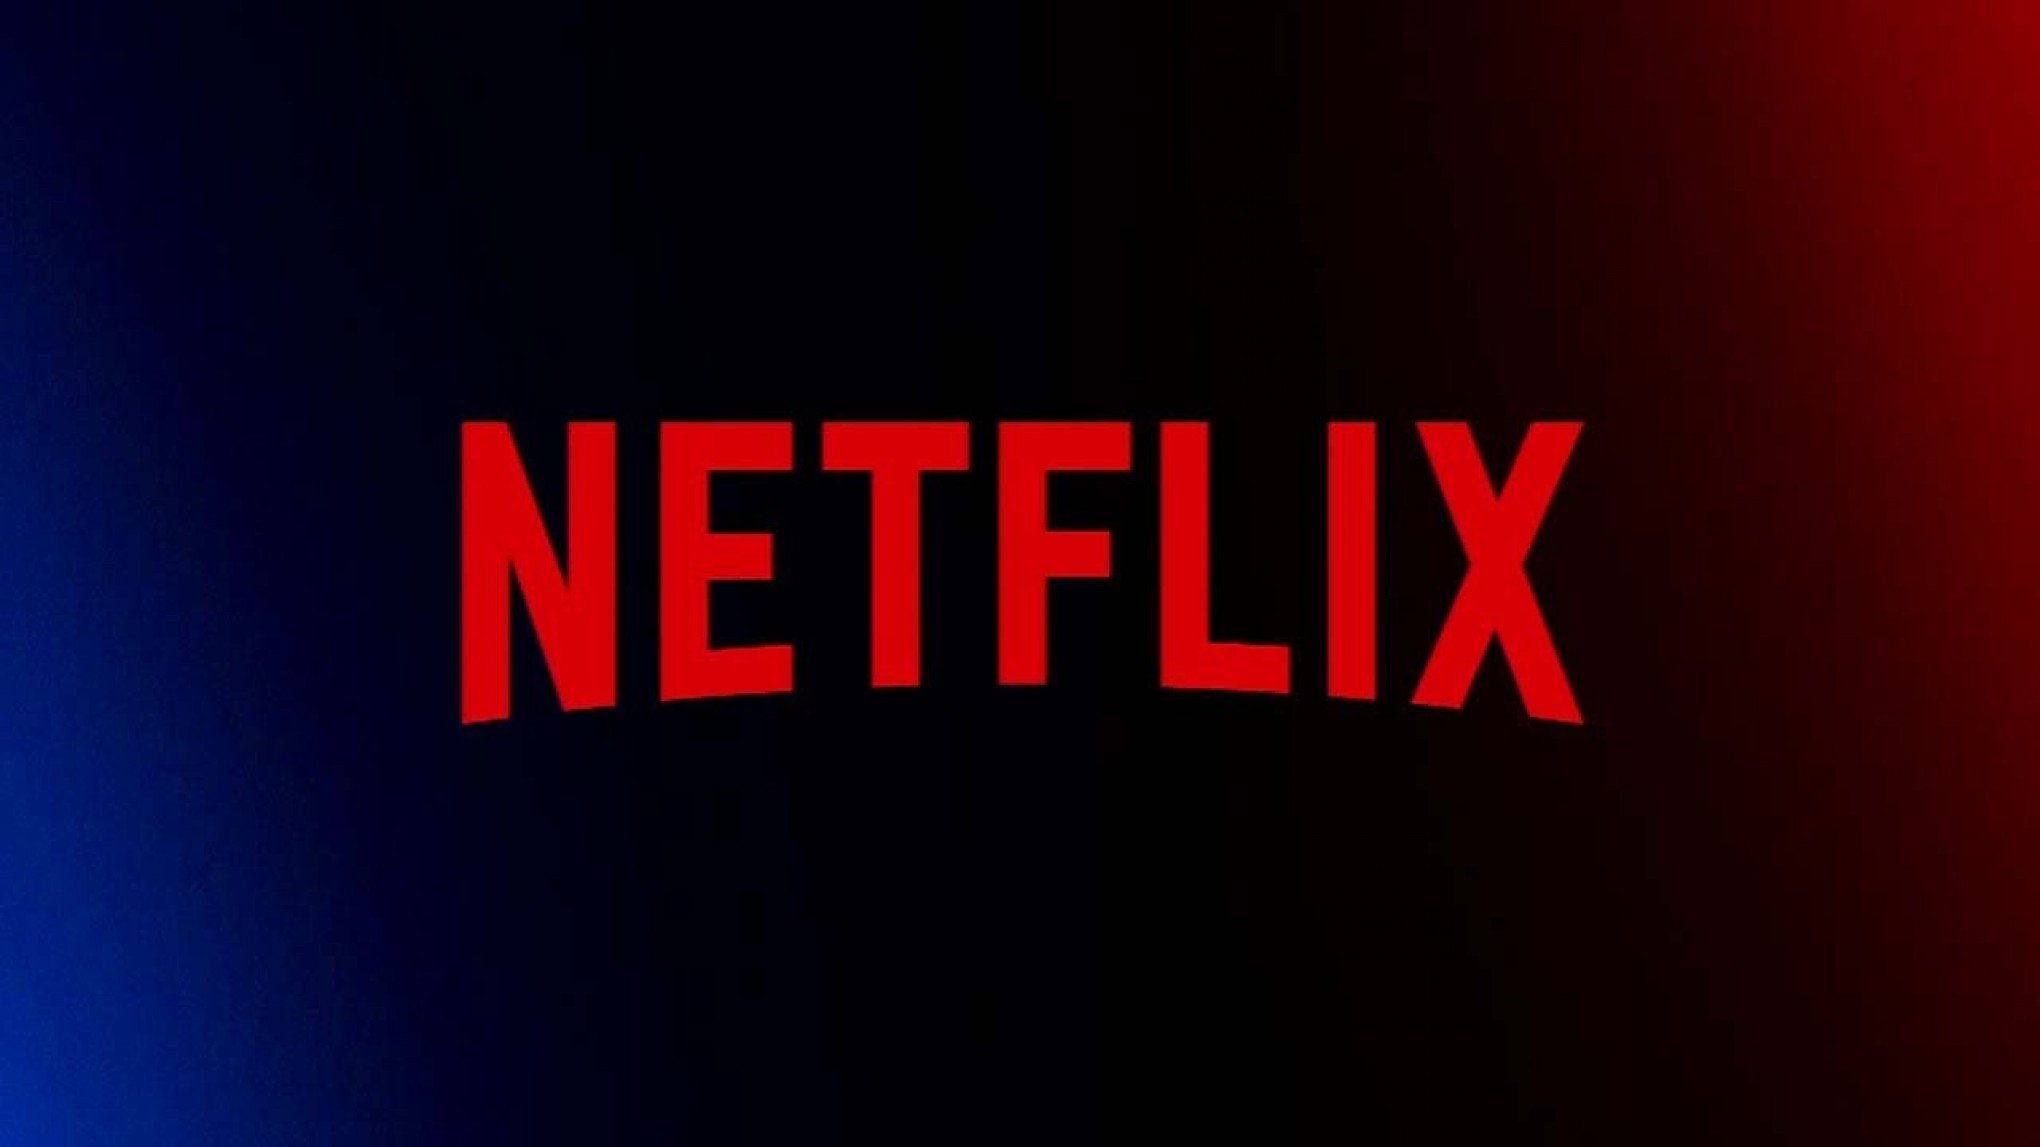 Taxa extra: como a Netflix sabe onde está um dispositivo?, Tecnologia